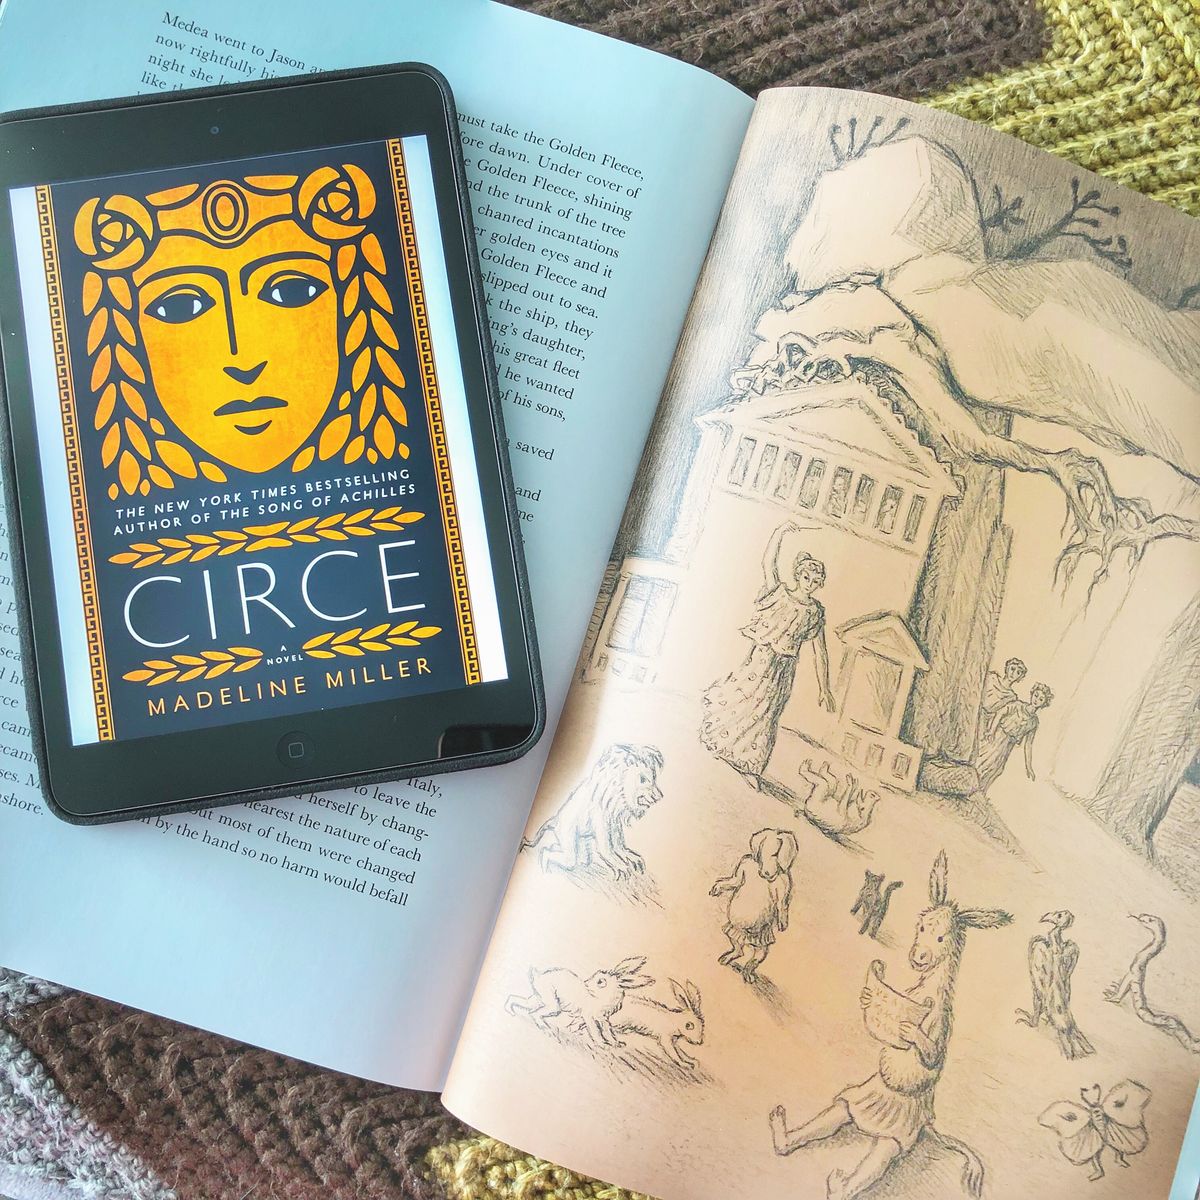 Book review: "Circe"